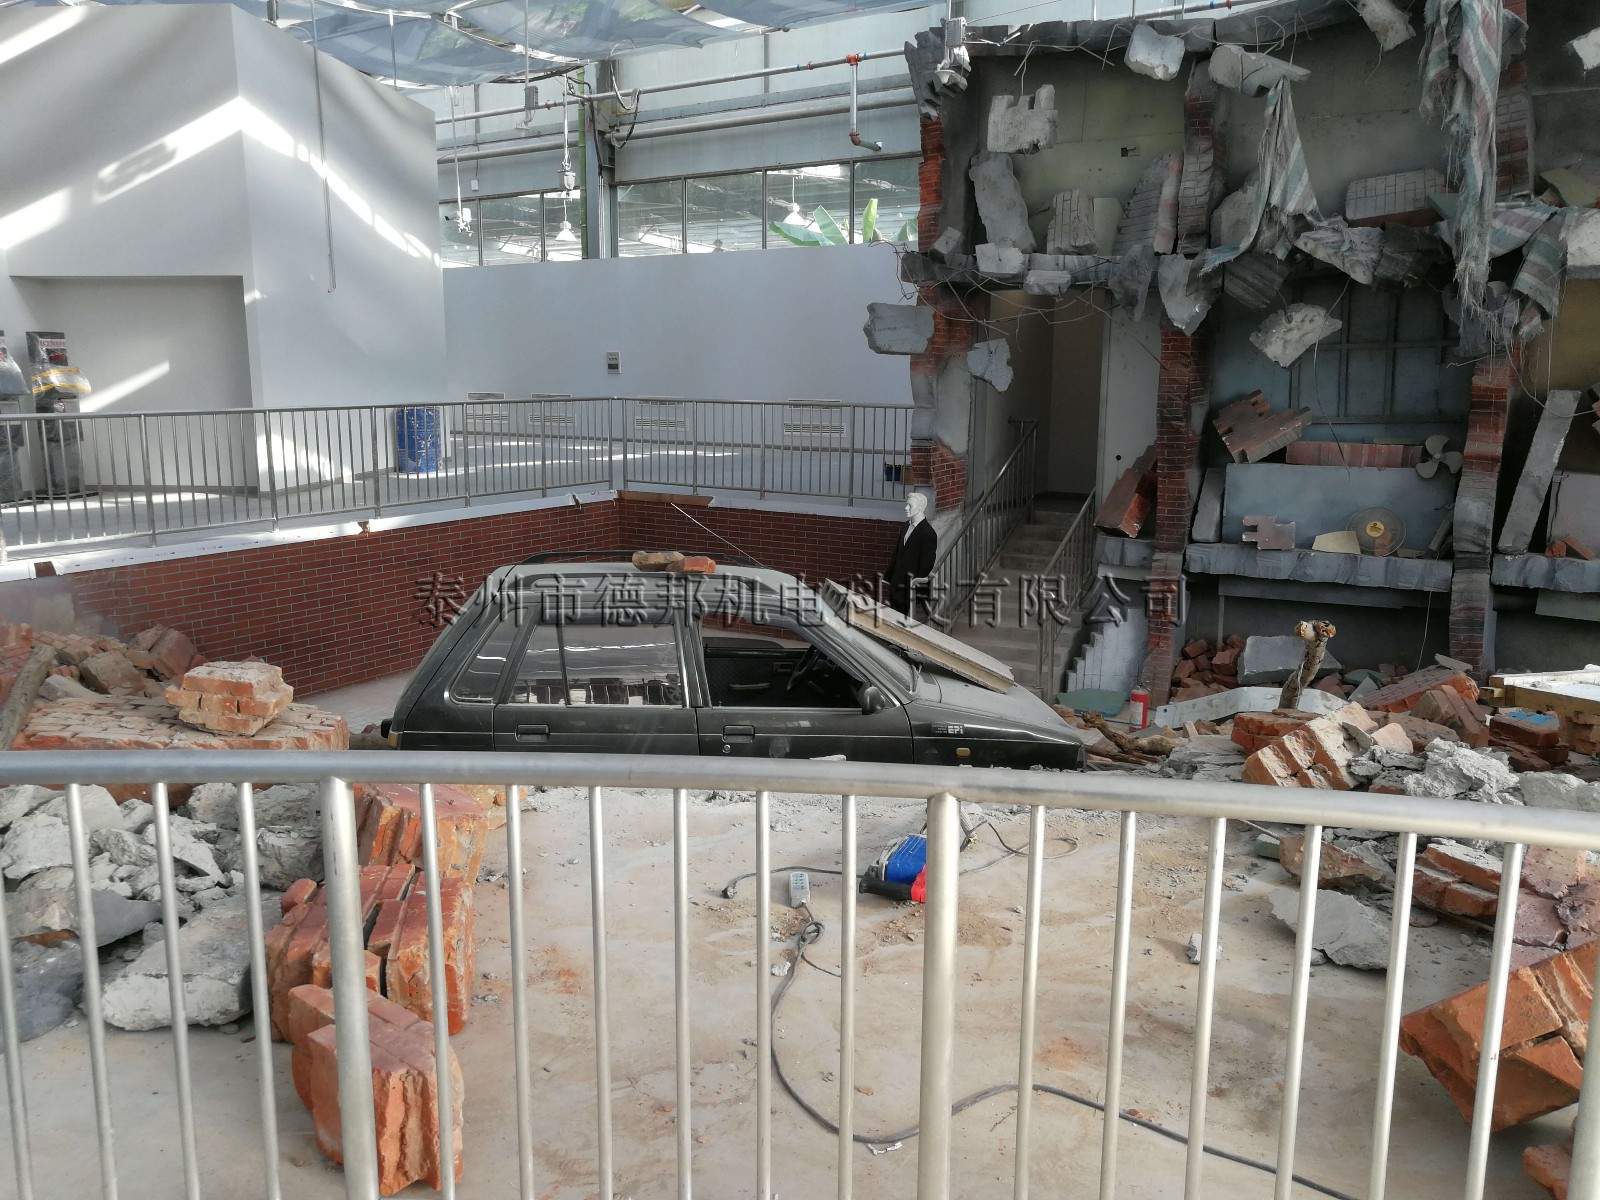 北京公共安全体验馆--地震震后场景废墟再现